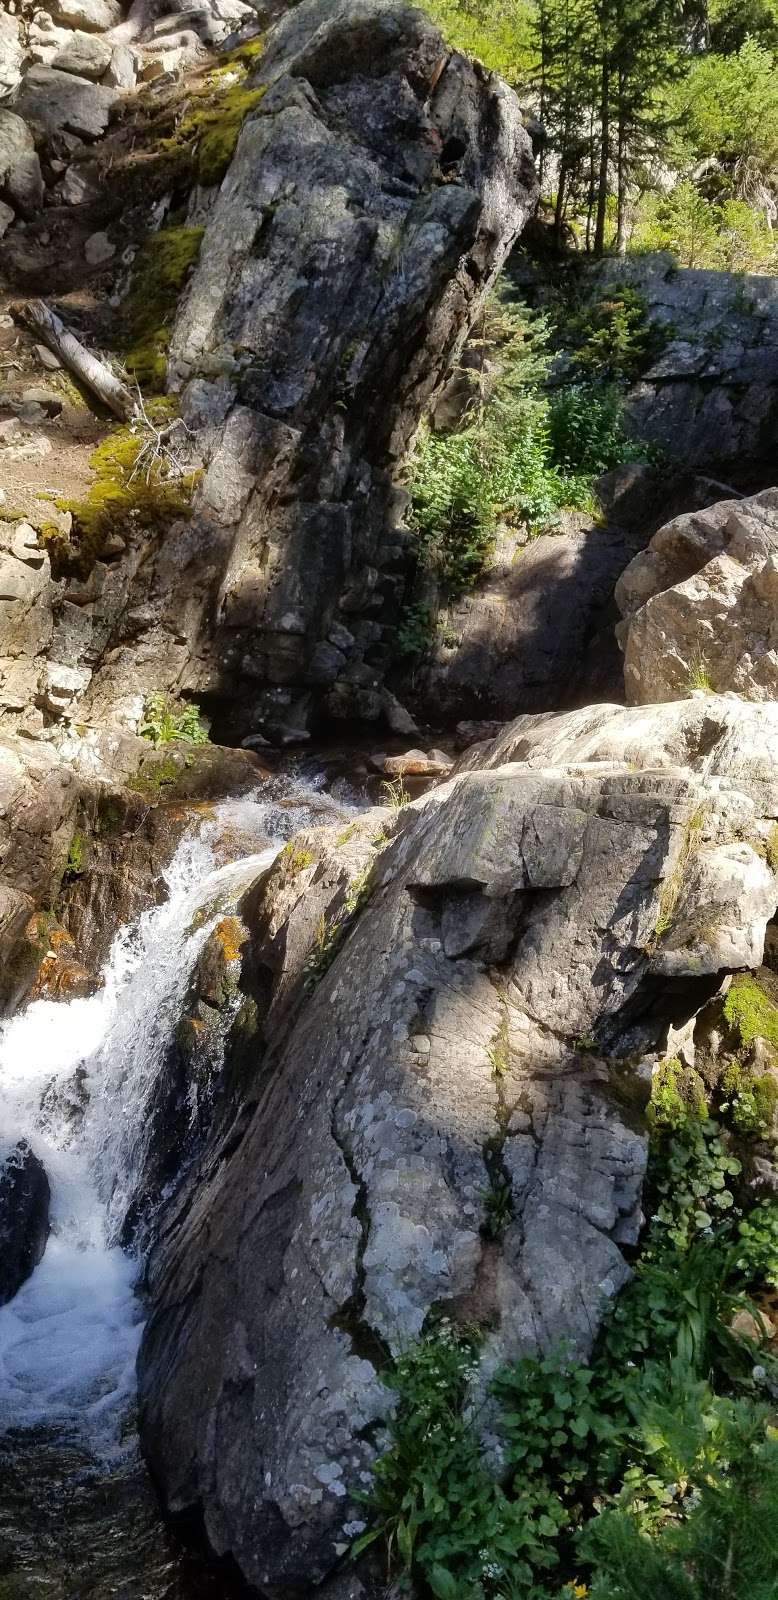 Jim Creek Trail | Idaho Springs, CO 80452, USA